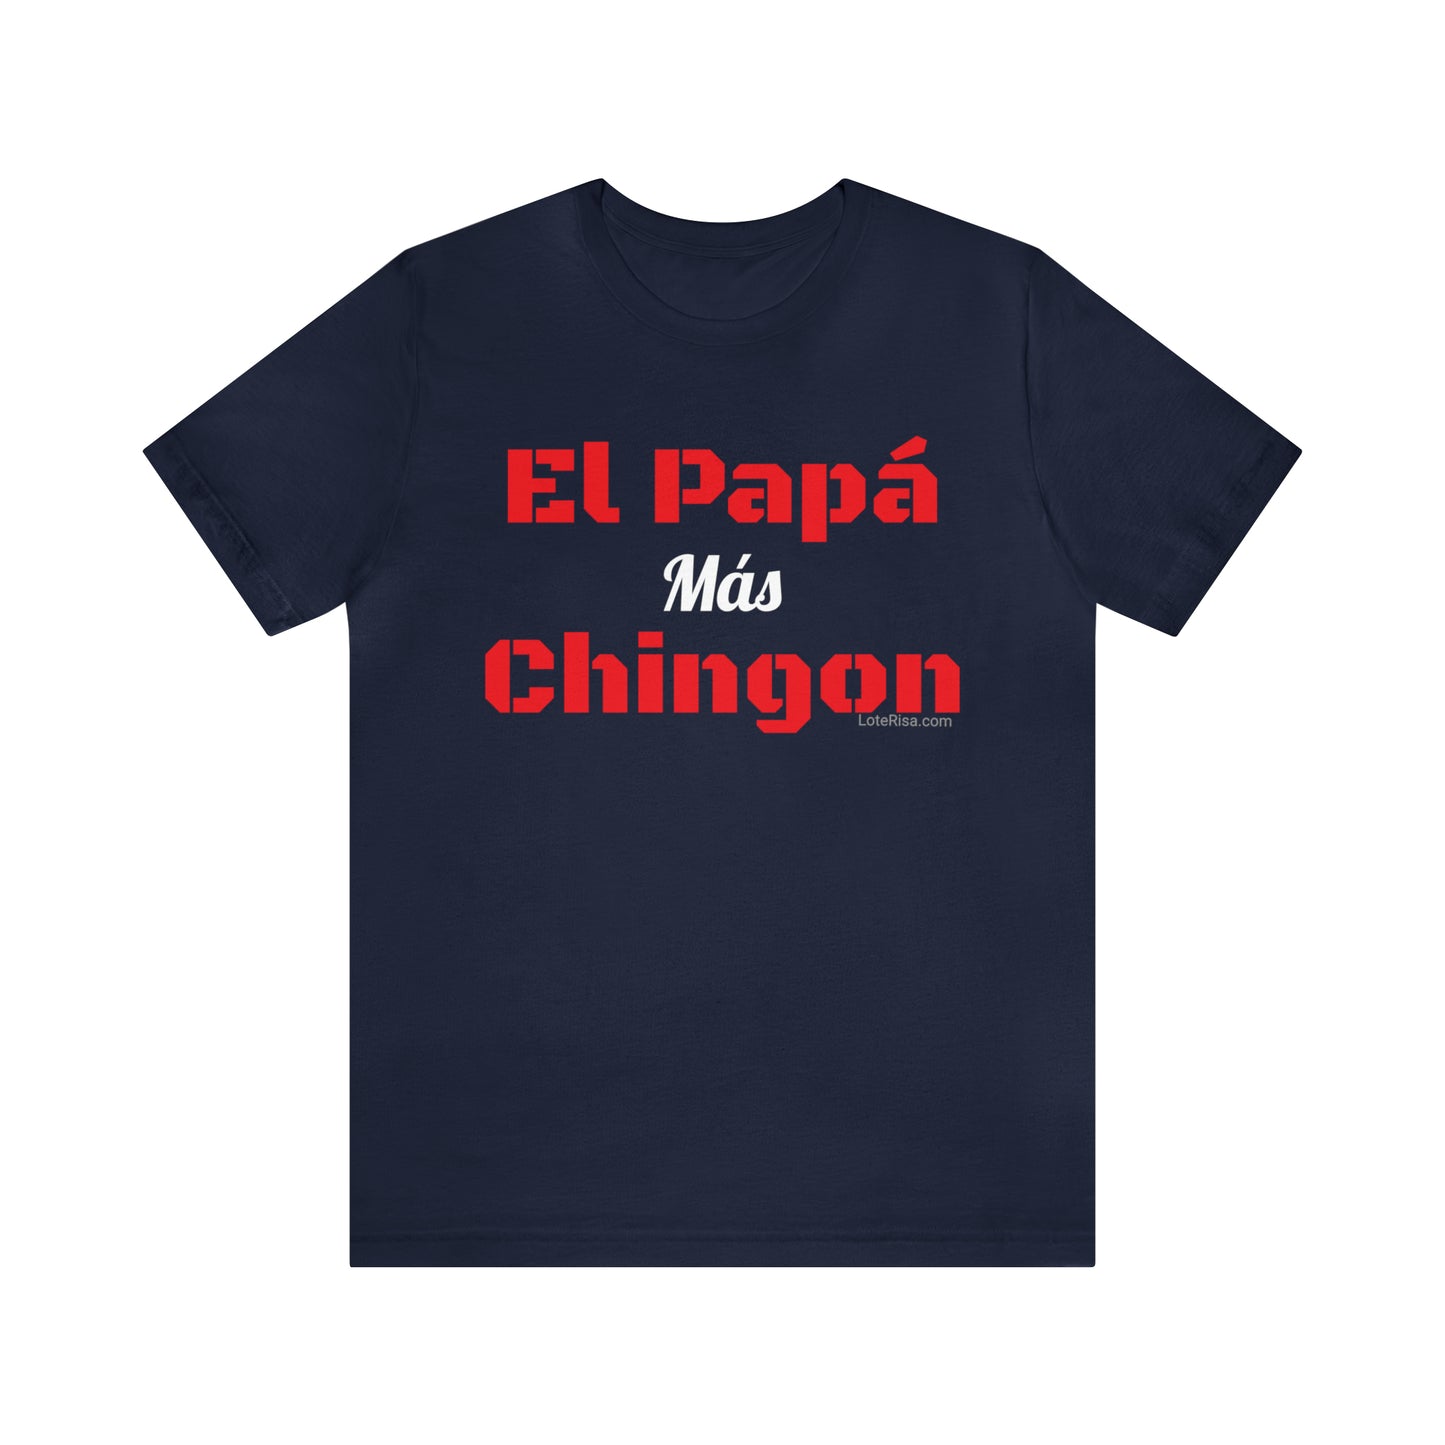 El Papá Mas Chingon T-Shirt